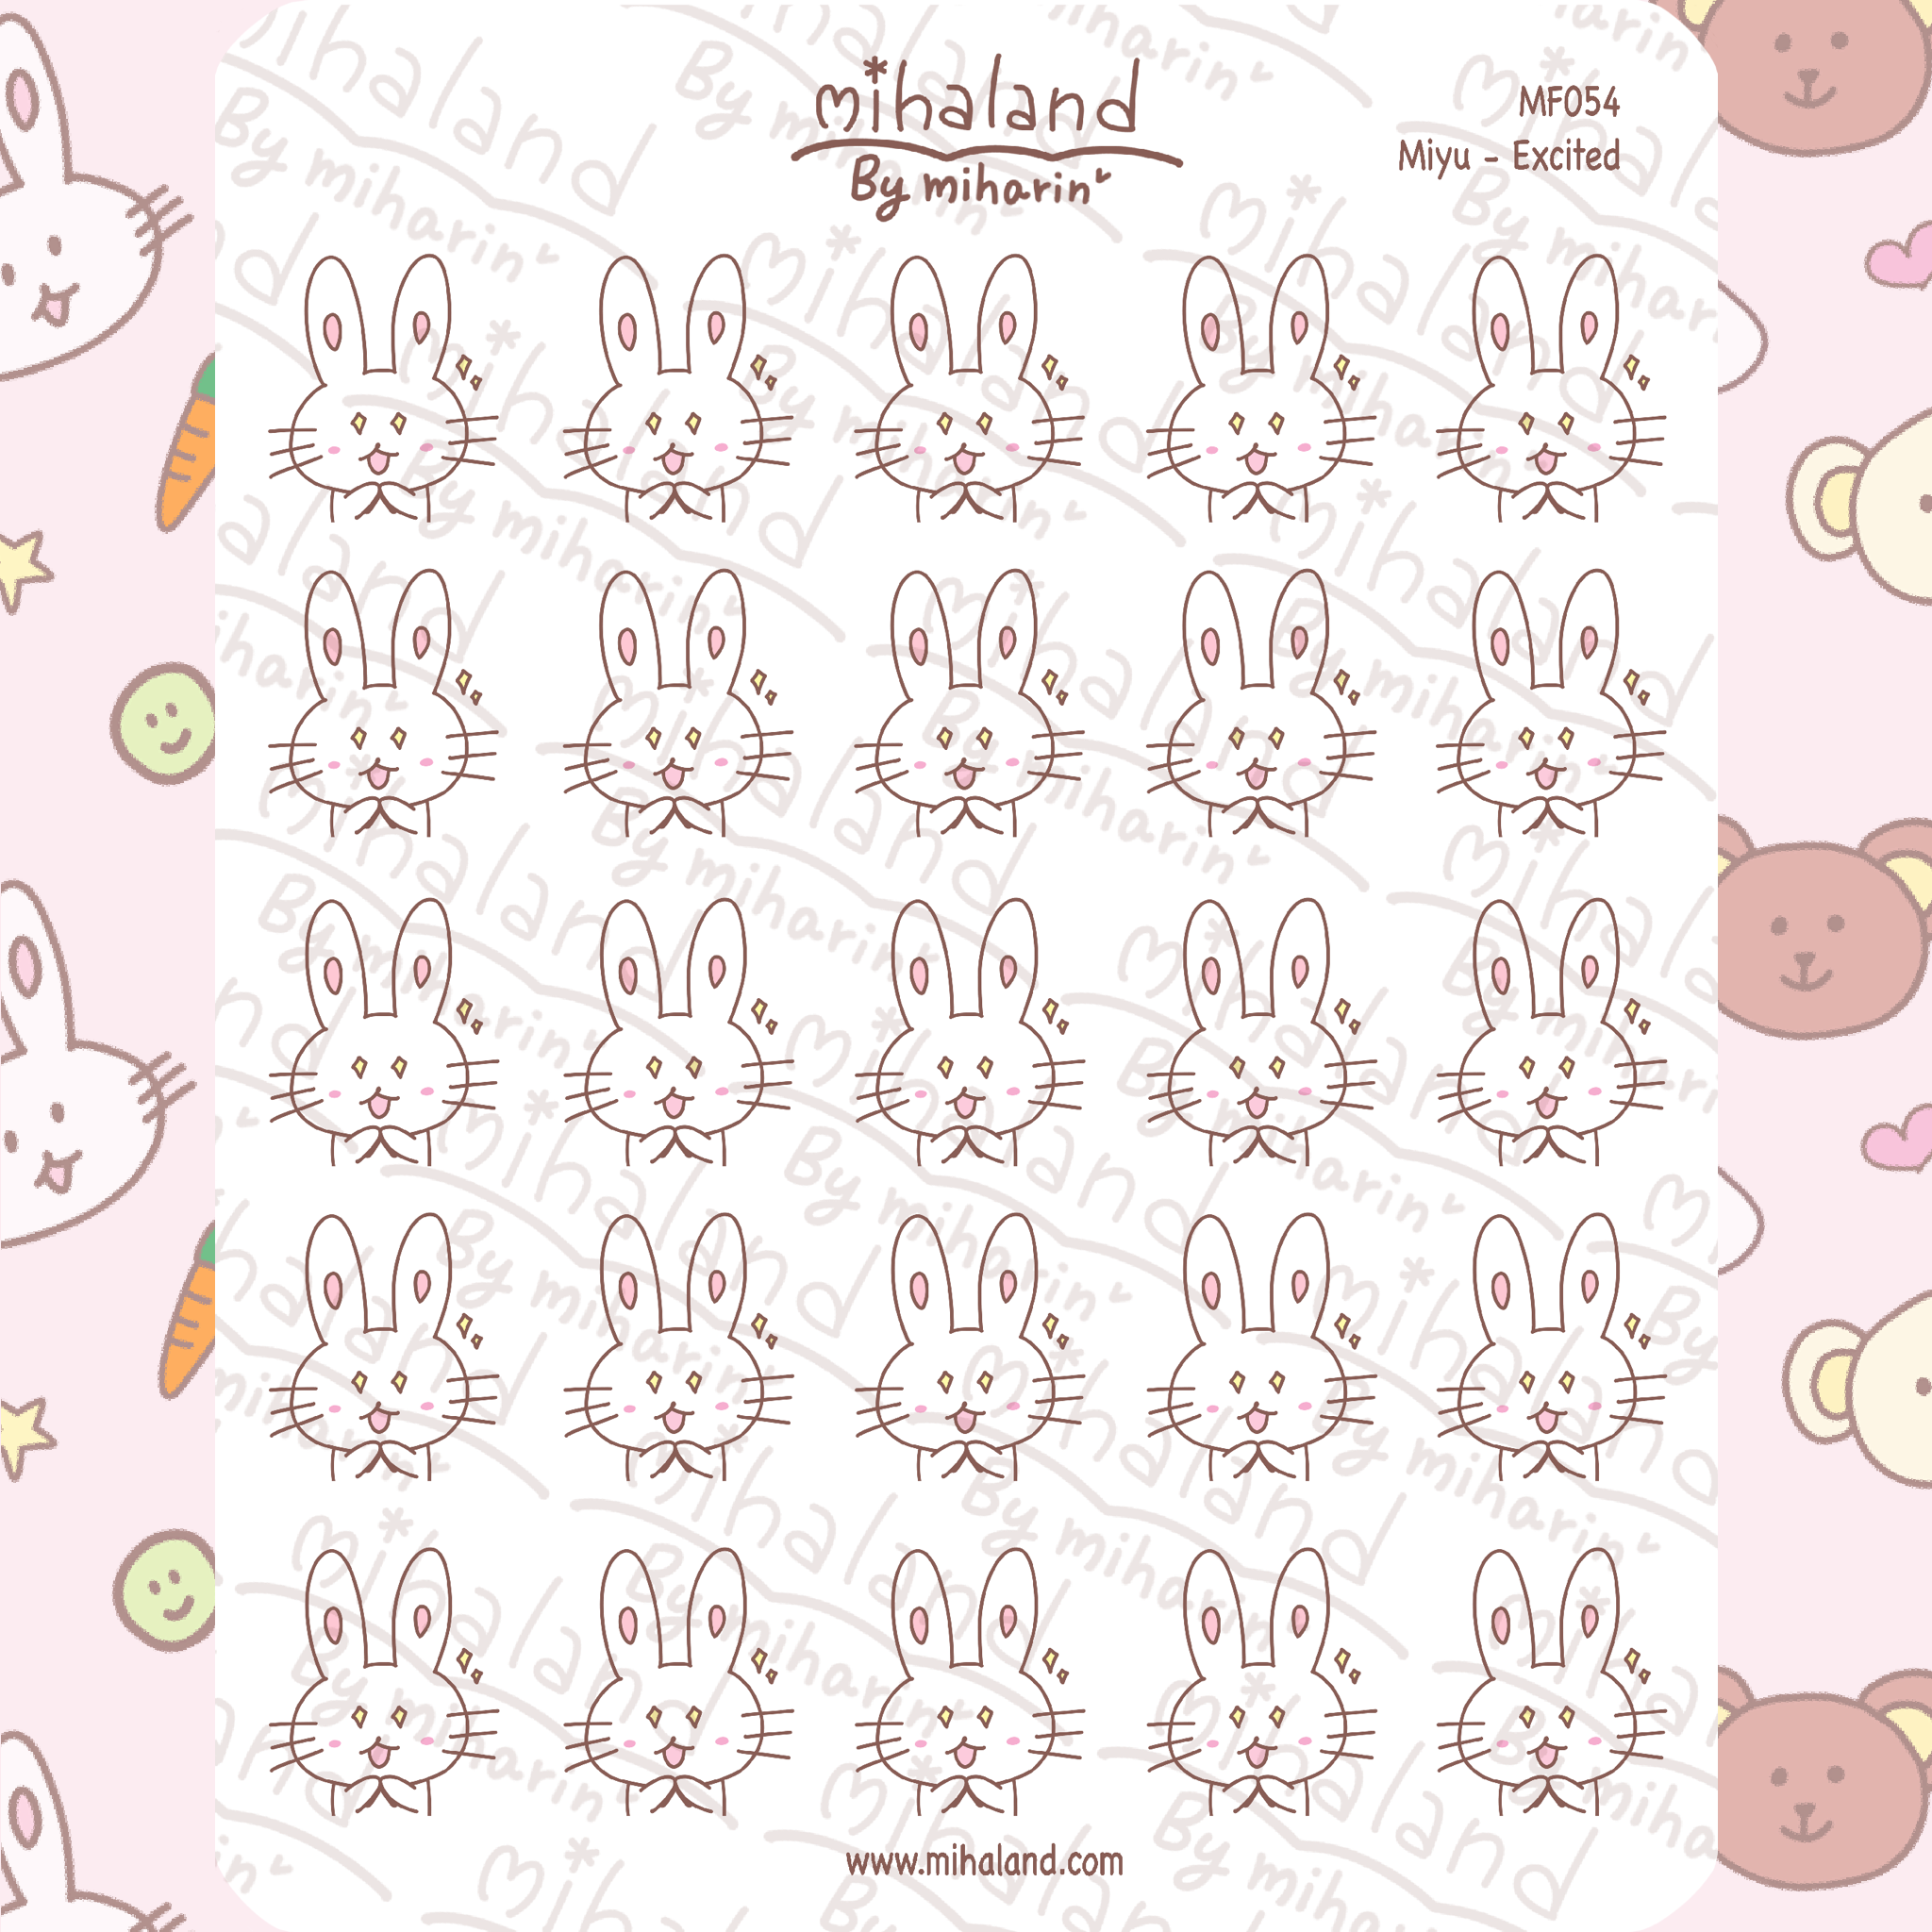 Miyu - Excited Planner Stickers (MF054)